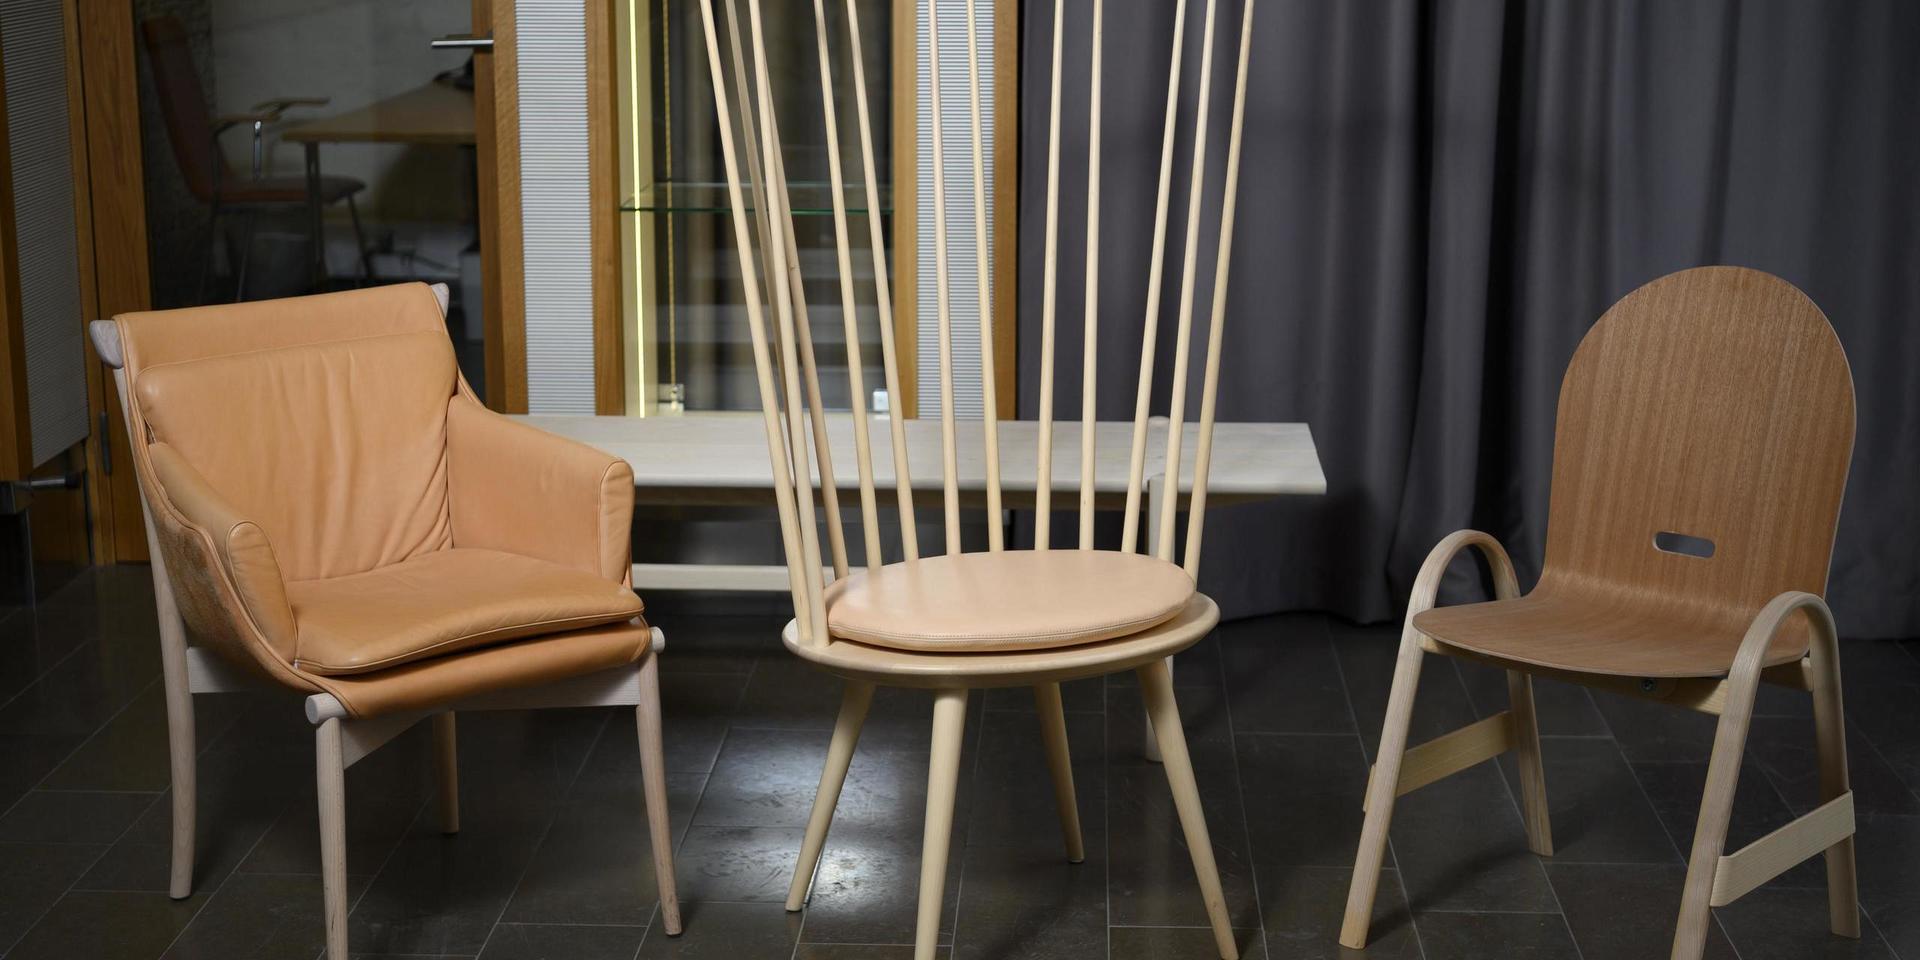 Svenskdesignade trämöbler är i fokus på utställningen Inside Swedish Design under Stockholms designvecka.